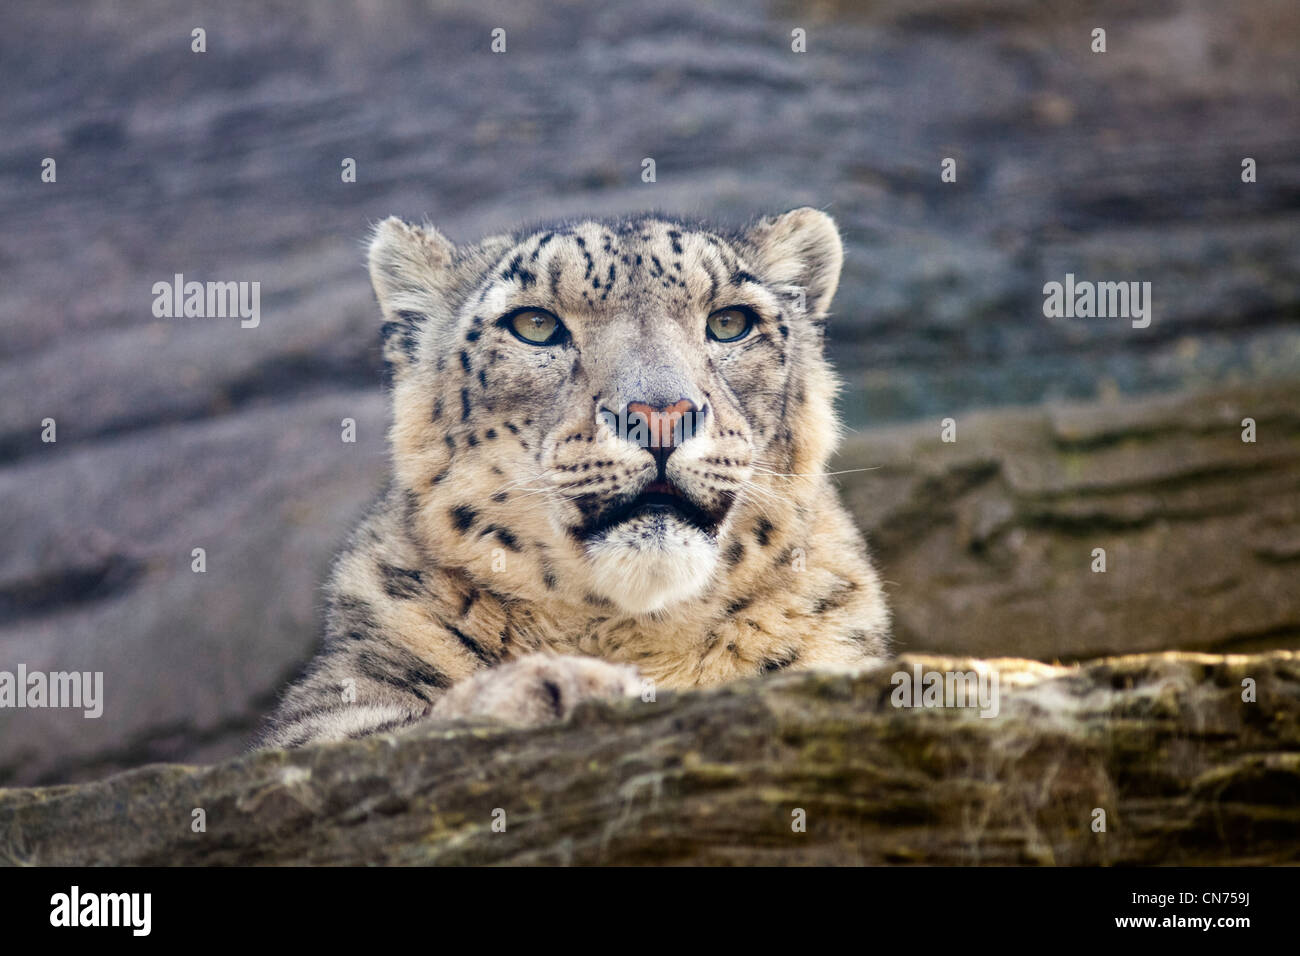 Snow leopard - Uncia uncia - resting Stock Photo